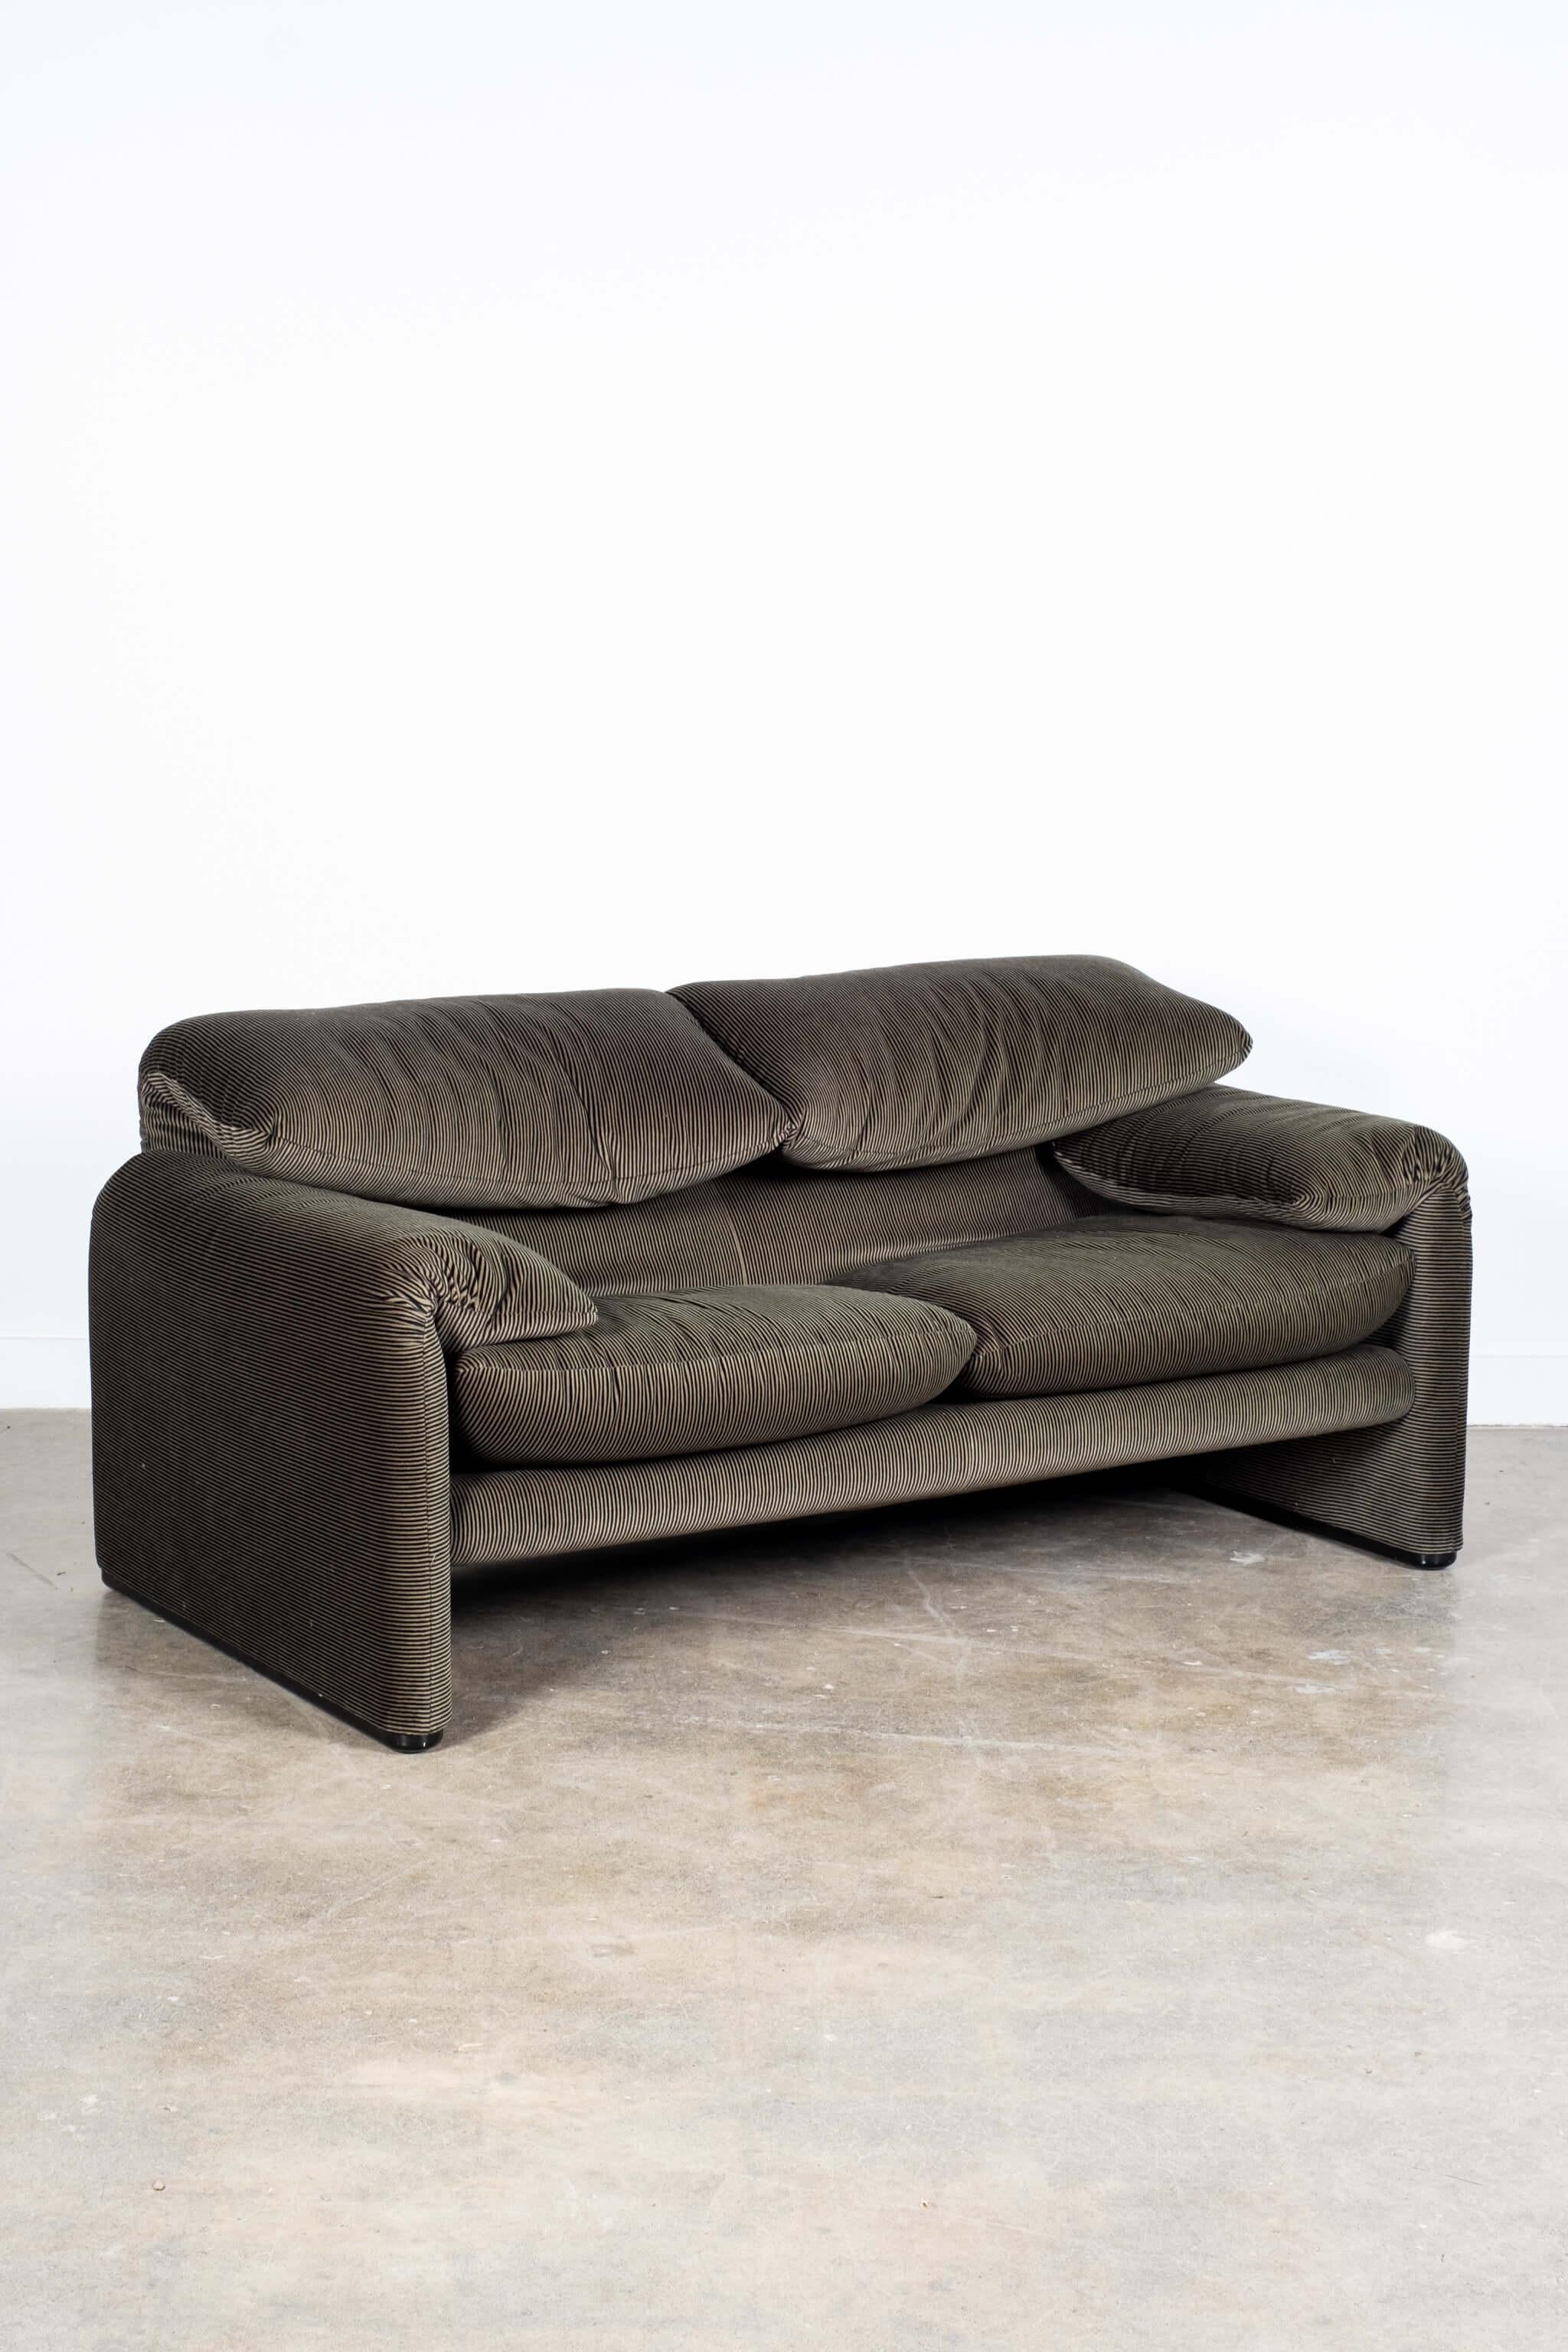 Post-Modern Maralunga 2-Seater Sofa in Original Velvet by Vico Magistretti for Cassina